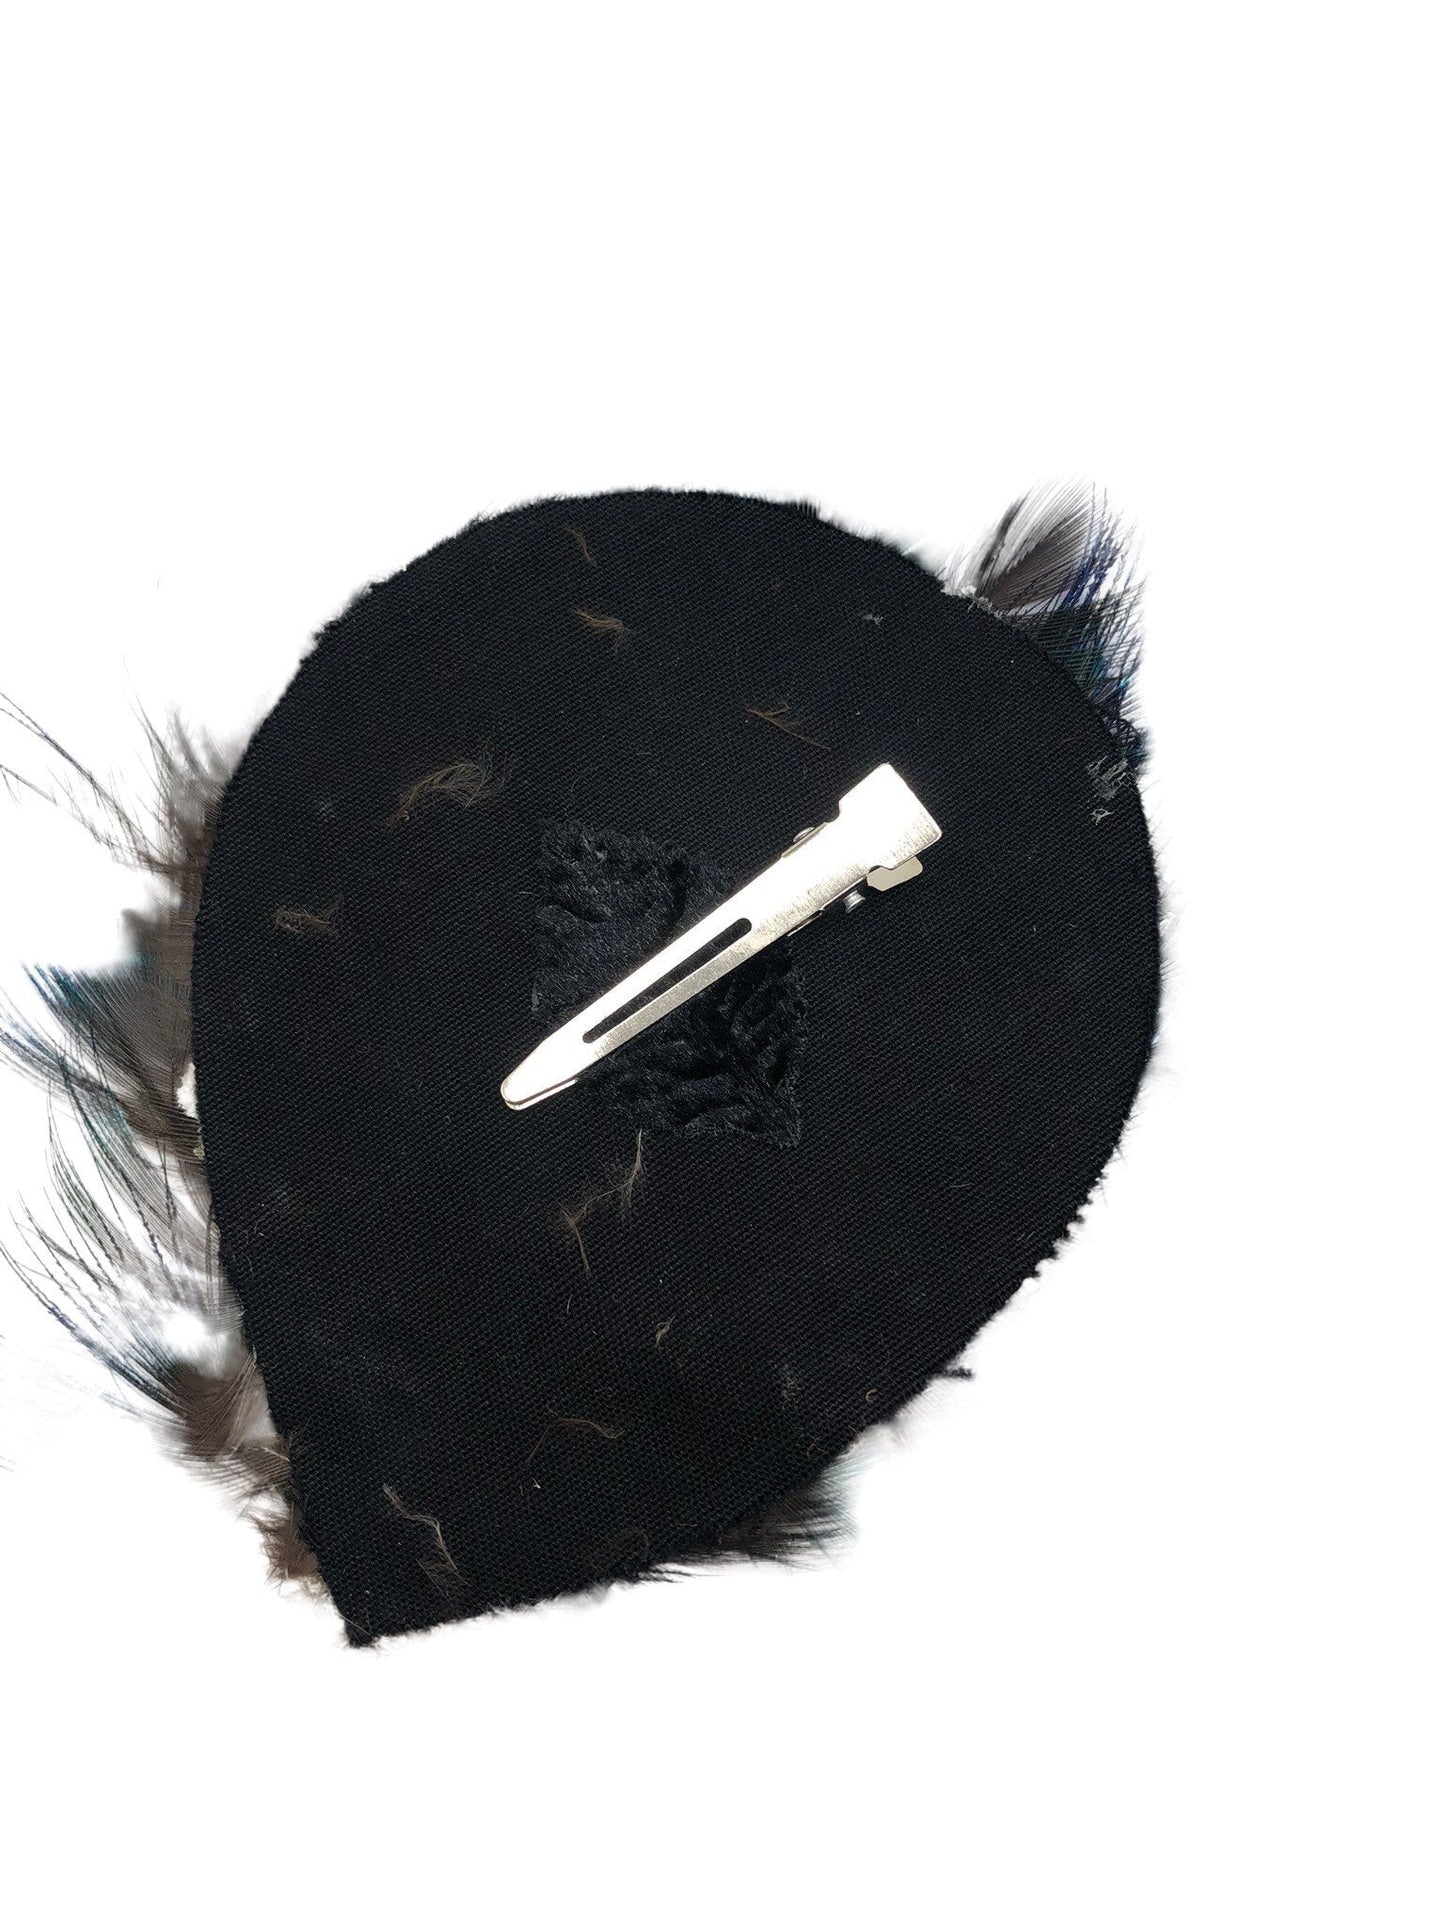 Karin's Garden Blue Tan Feather Pad Clip Approx 4" x 3" Clip Into Hair or clip onto Lapel